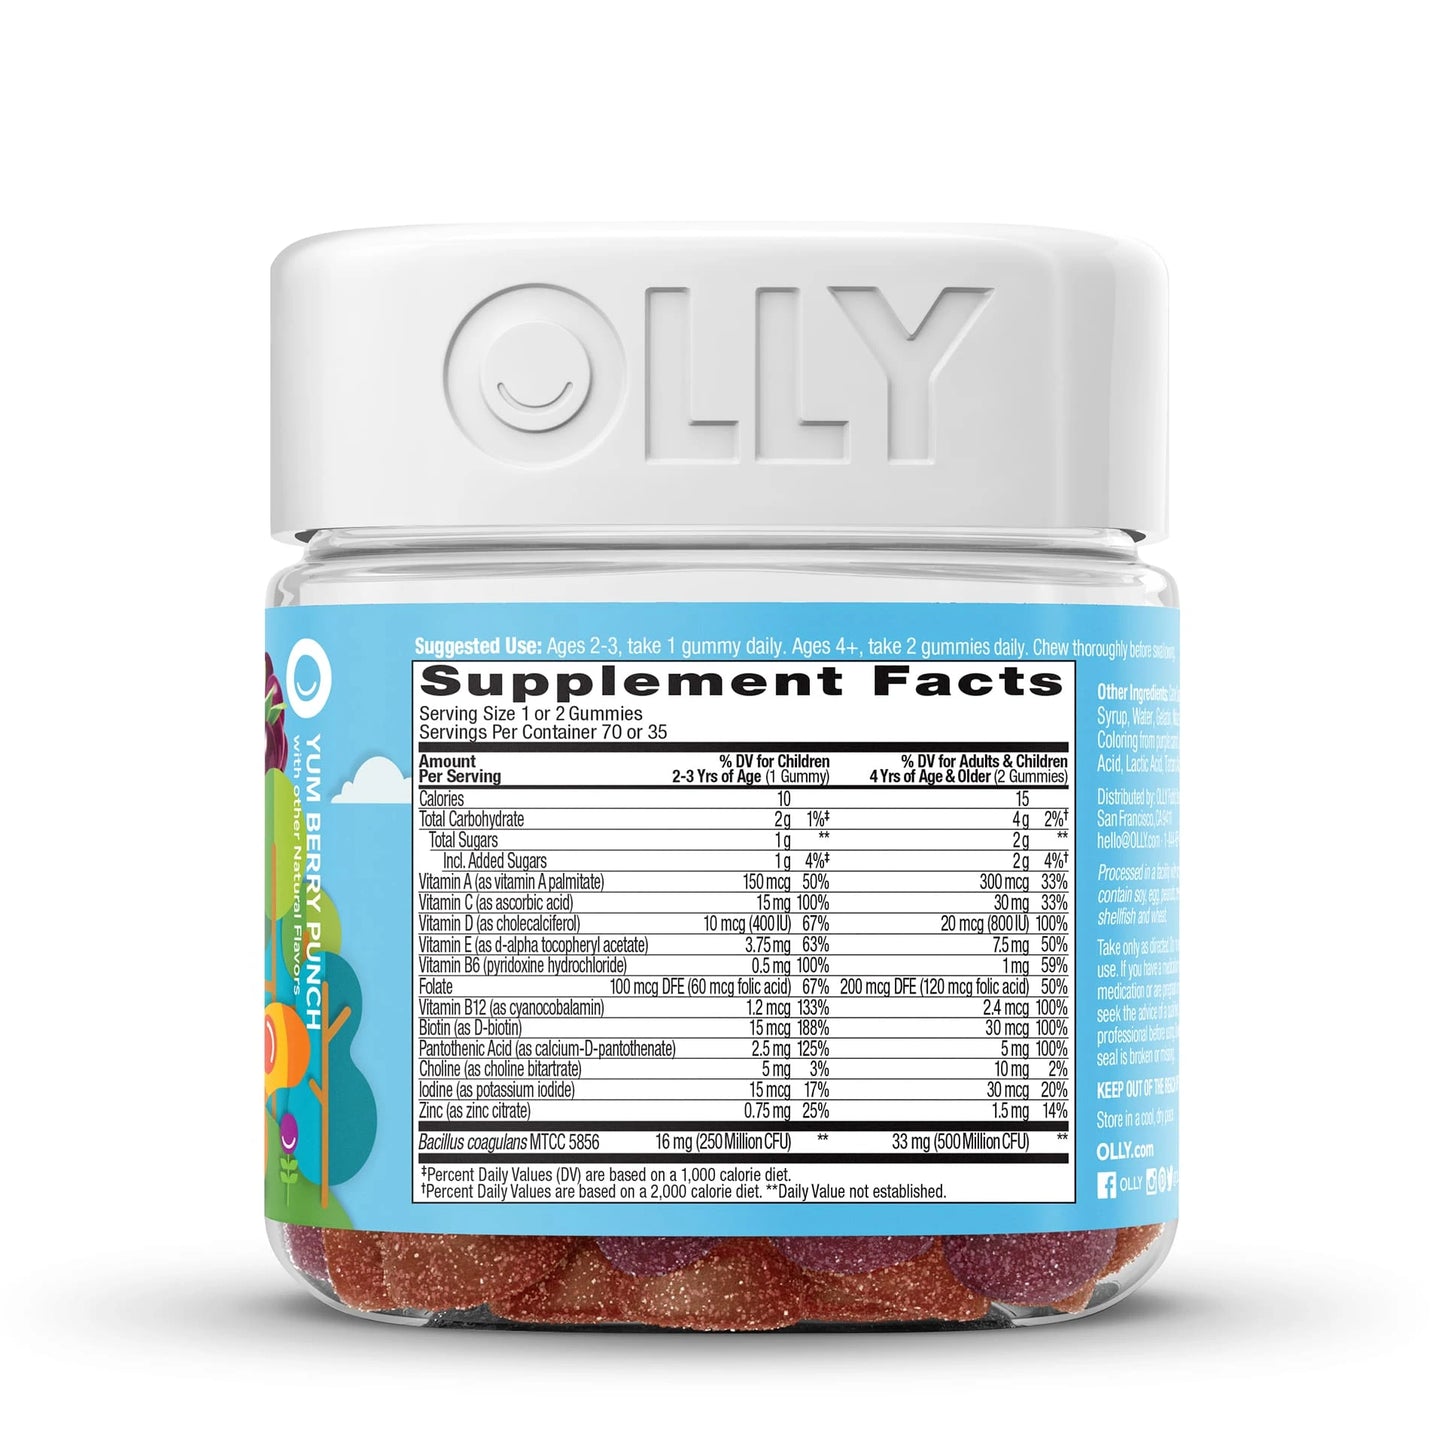 OLLY Kids Multi + Probiotic Gummies Berry Punch - Gomitas